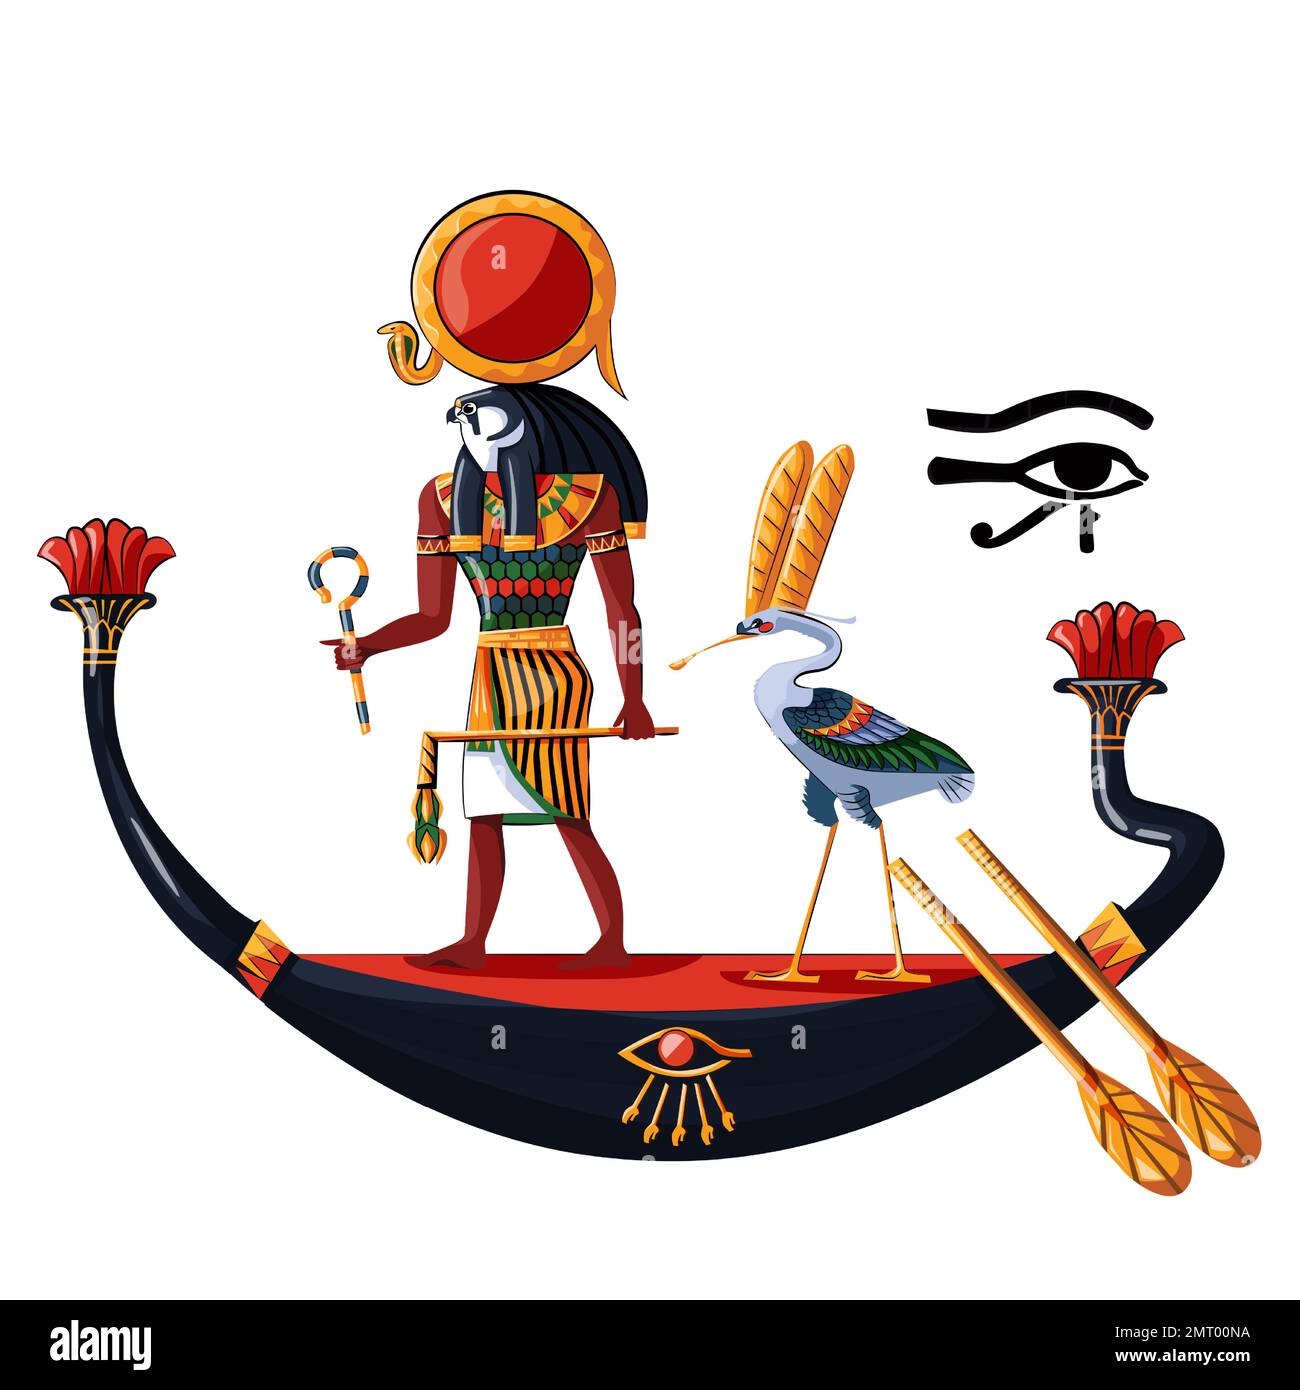 Antico Egitto sole dio Ra o Horus in barca di legno cartoon illustrazione vettoriale. Simbolo religioso della cultura egiziana, antico dio-falco in barca di notte o di giorno, uccello sacro ibis, isolato su sfondo bianco Illustrazione Vettoriale